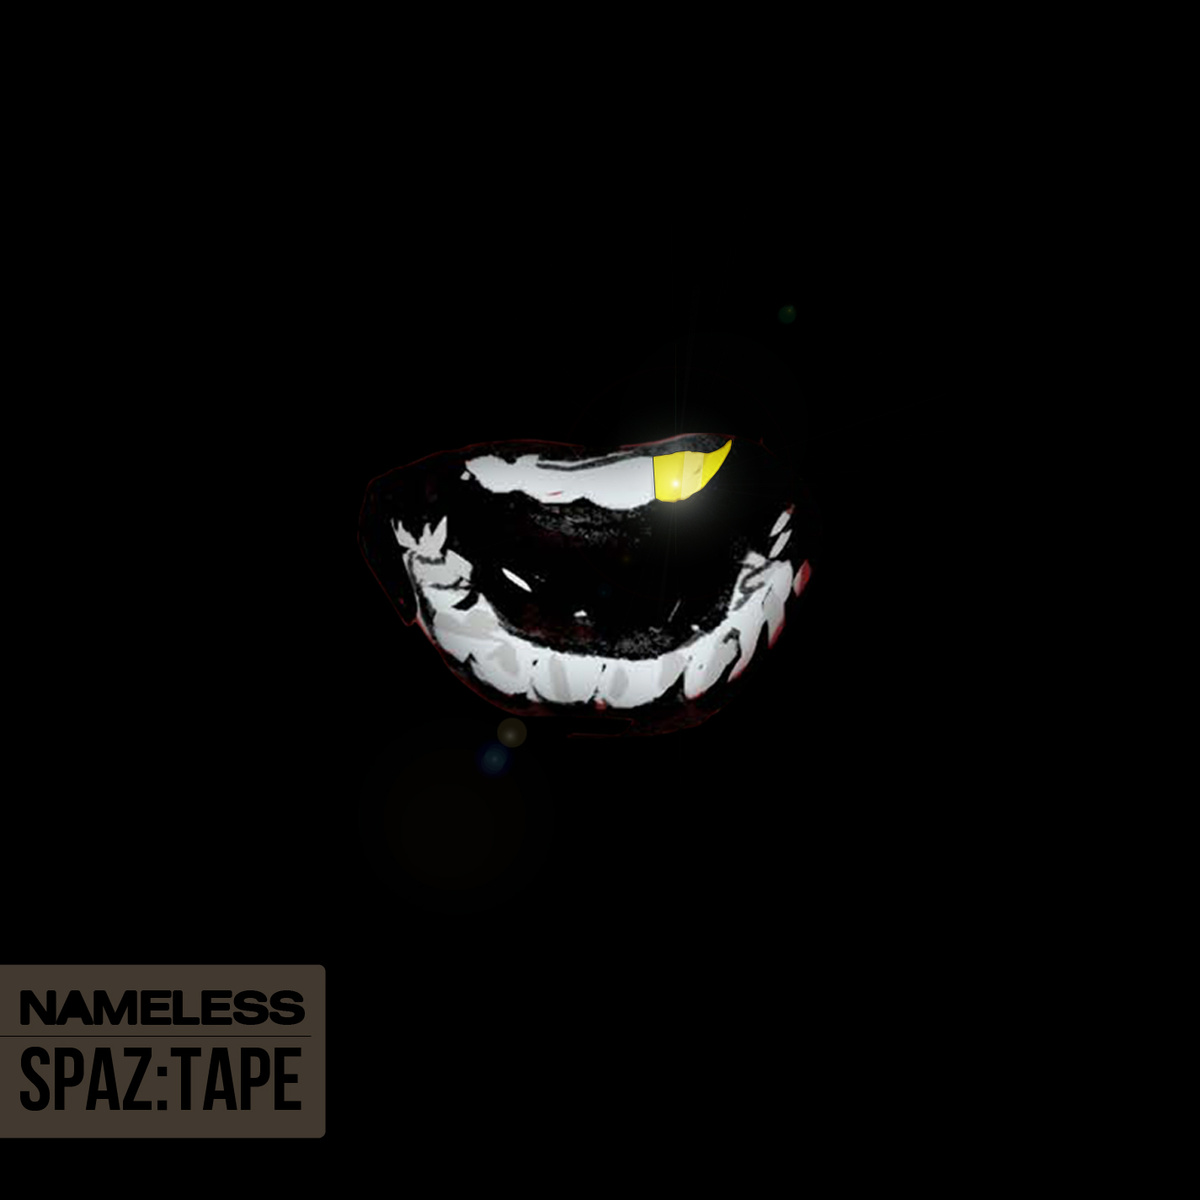 Nameless "SPAZ:TAPE' Release | @_nameless